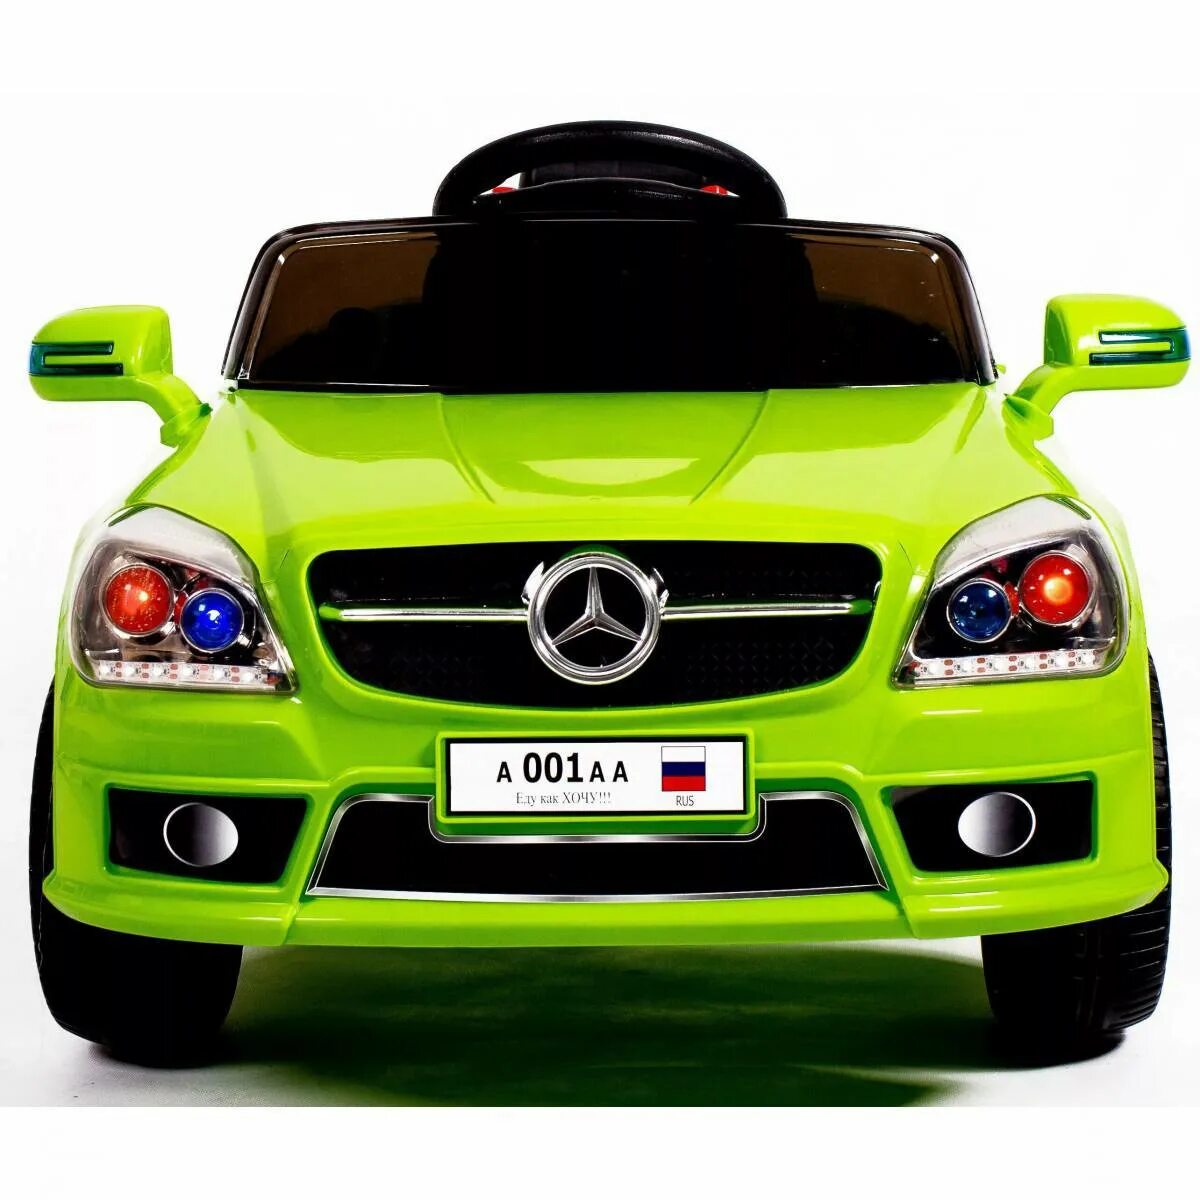 Автомобиль для детей. Детская машина. Зеленая машина для детей. Машины картинки для детей цветные.